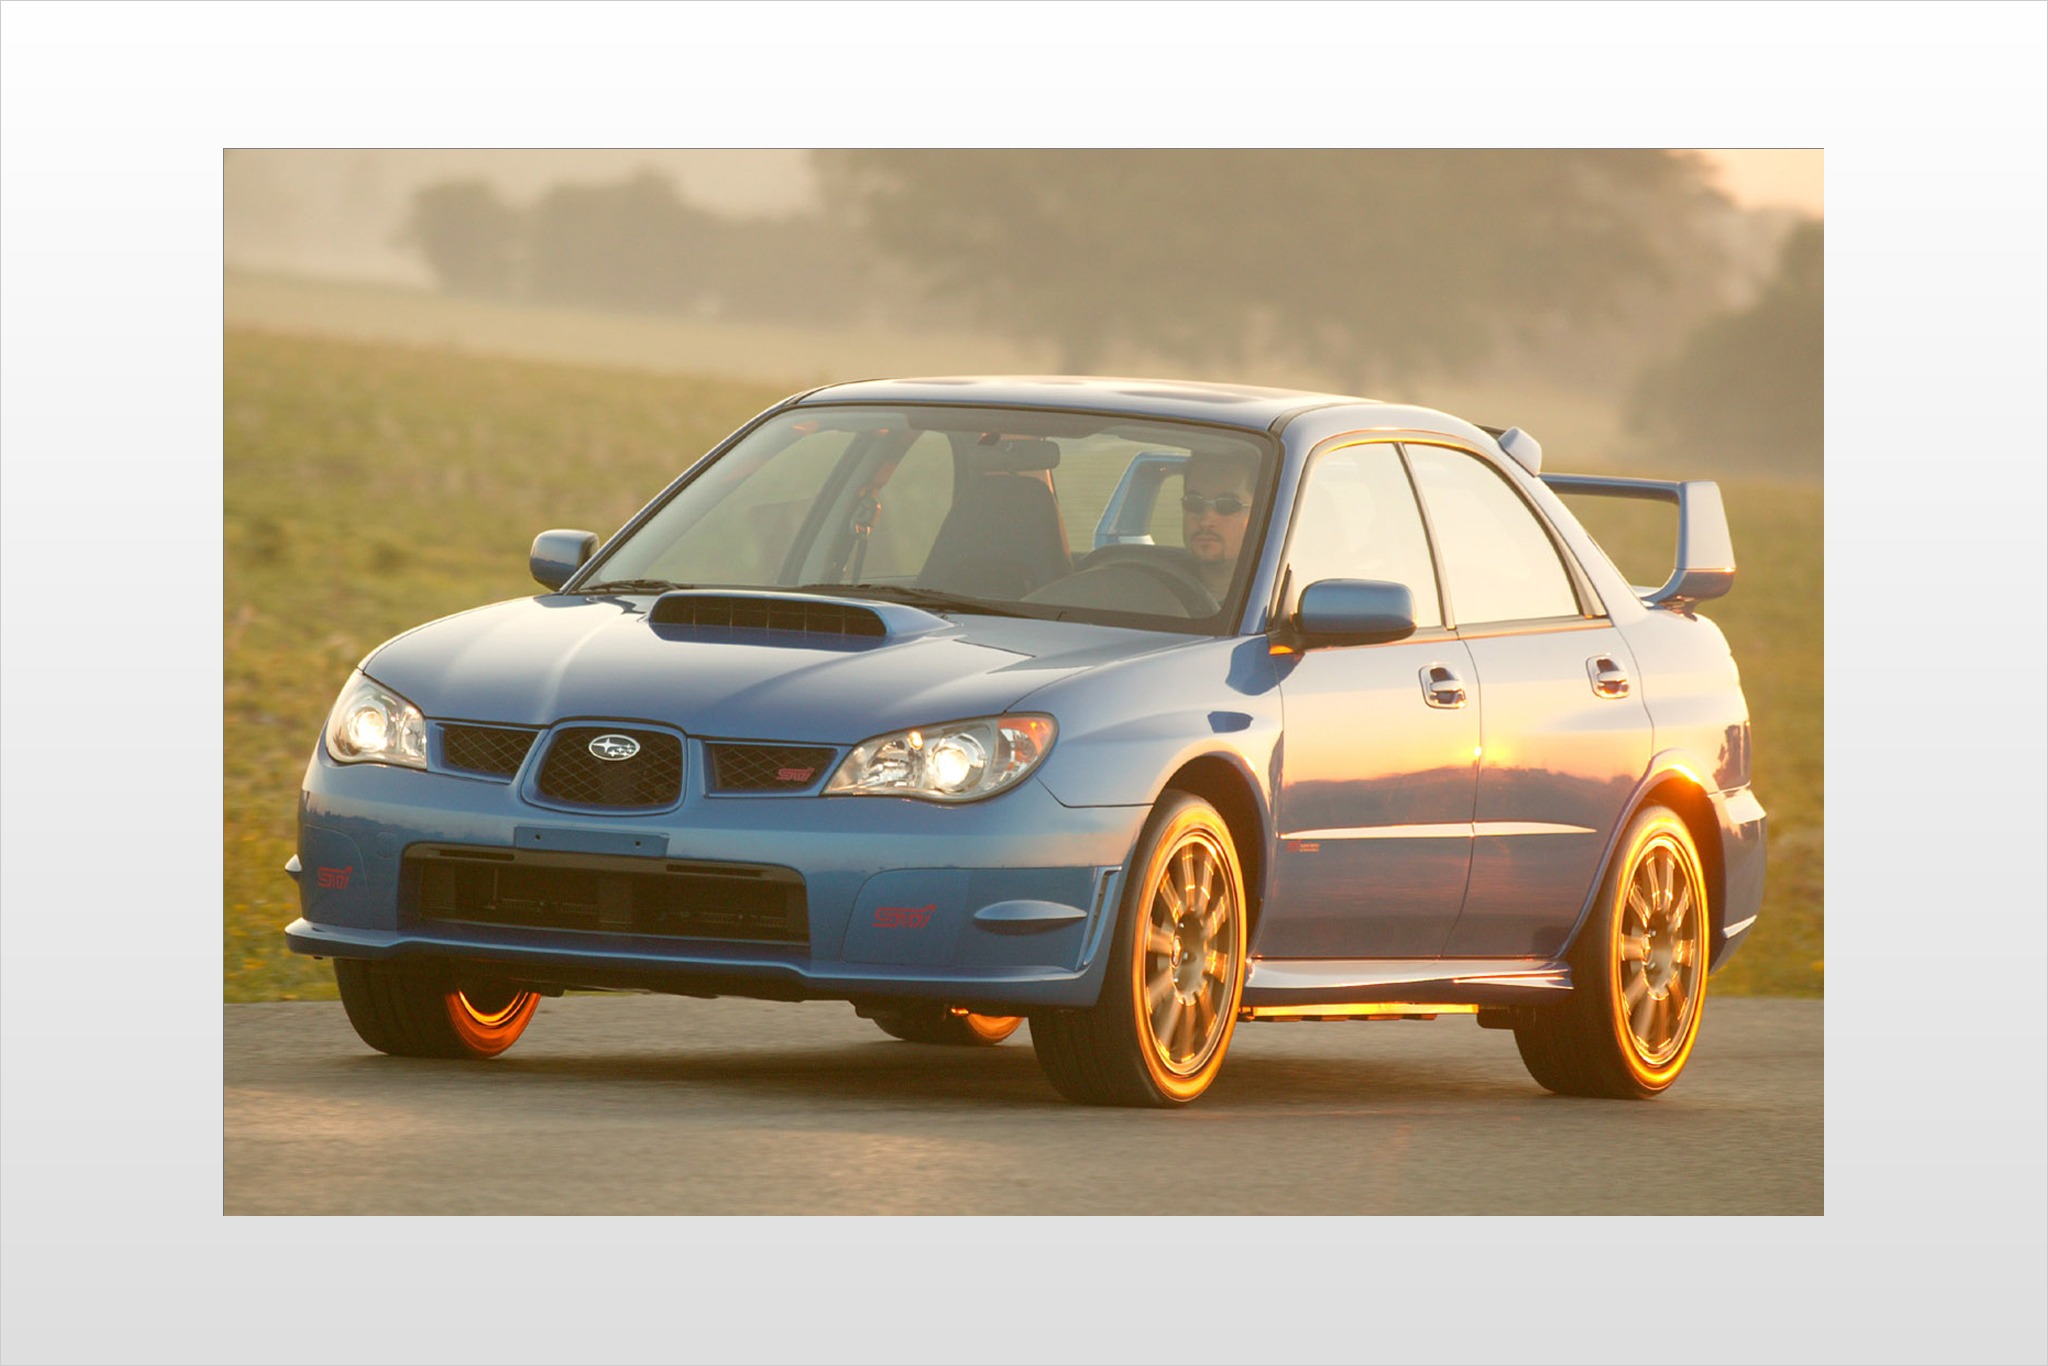 Wrx sti 2007. Subaru Impreza WRX 2006. Subaru Impreza WRX STI 2006. Subaru WRX STI 2006. Субару Impreza WRX STI 2006.